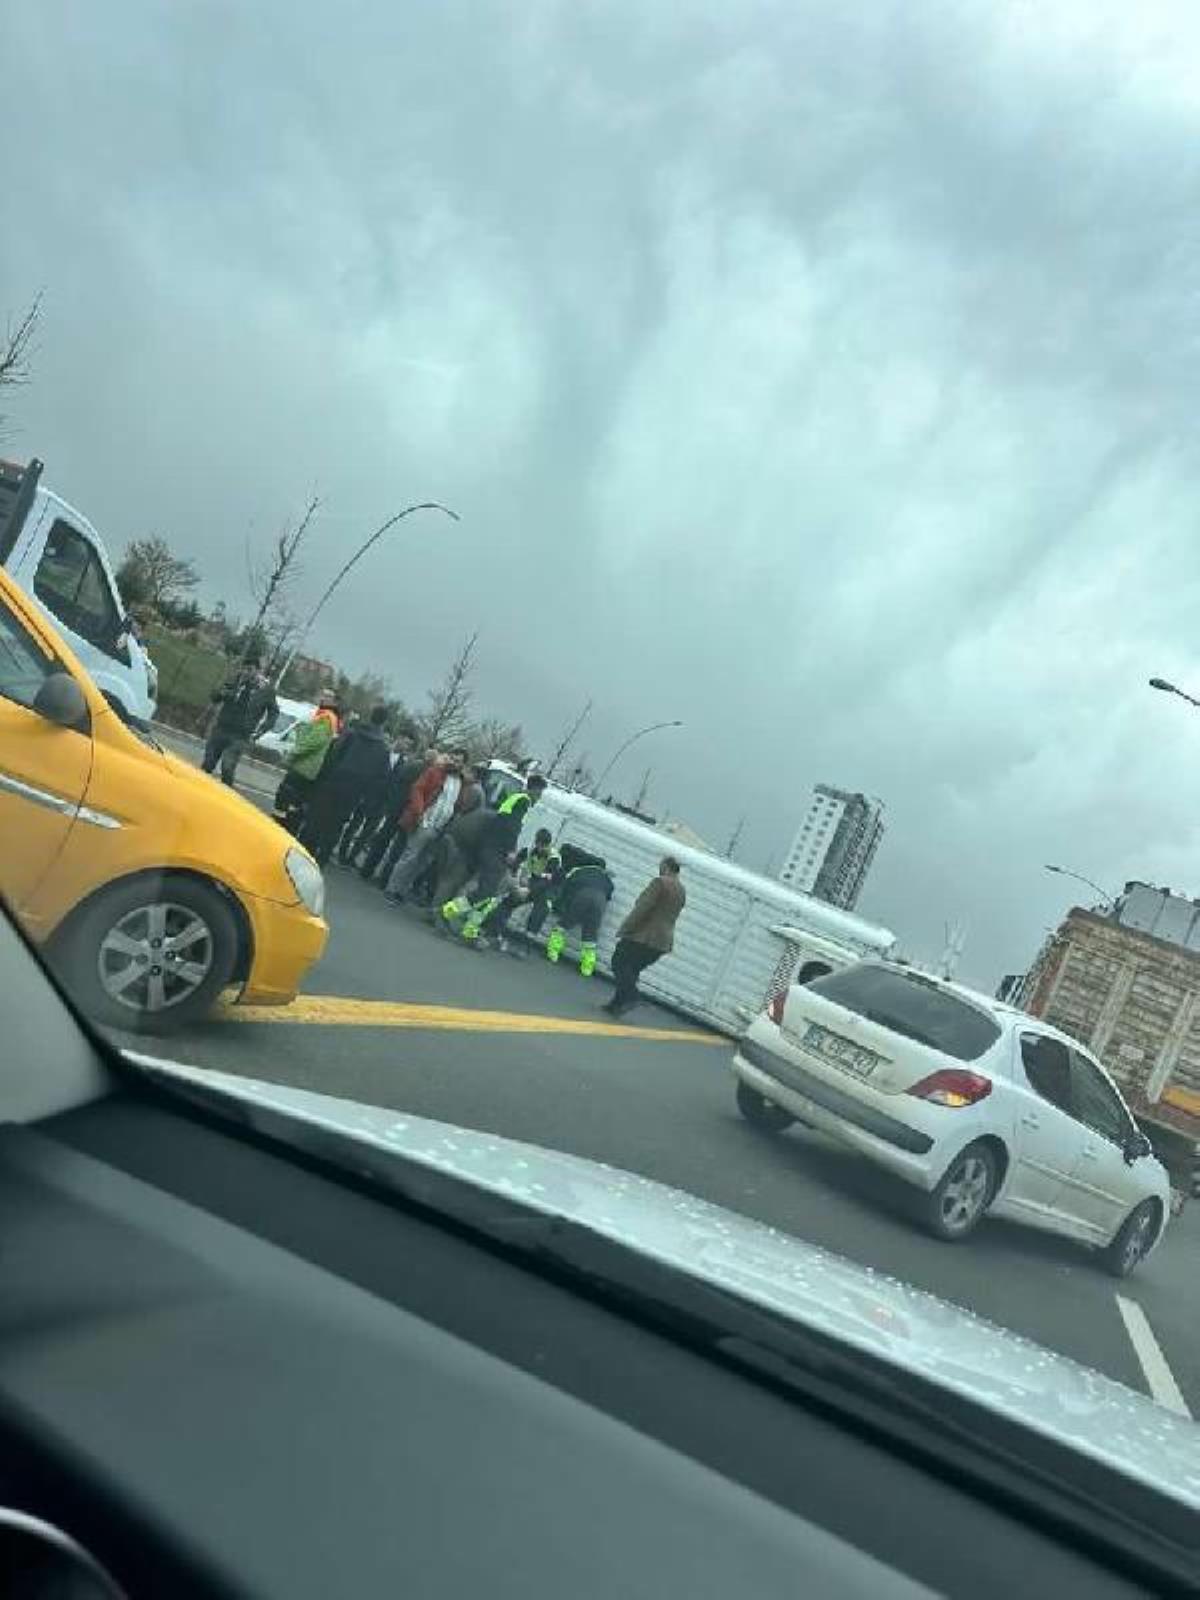 Ankara'da personellerin taşındığı servis minibüsü ile araba ve kamyonet çarpıştı 6 yaralı